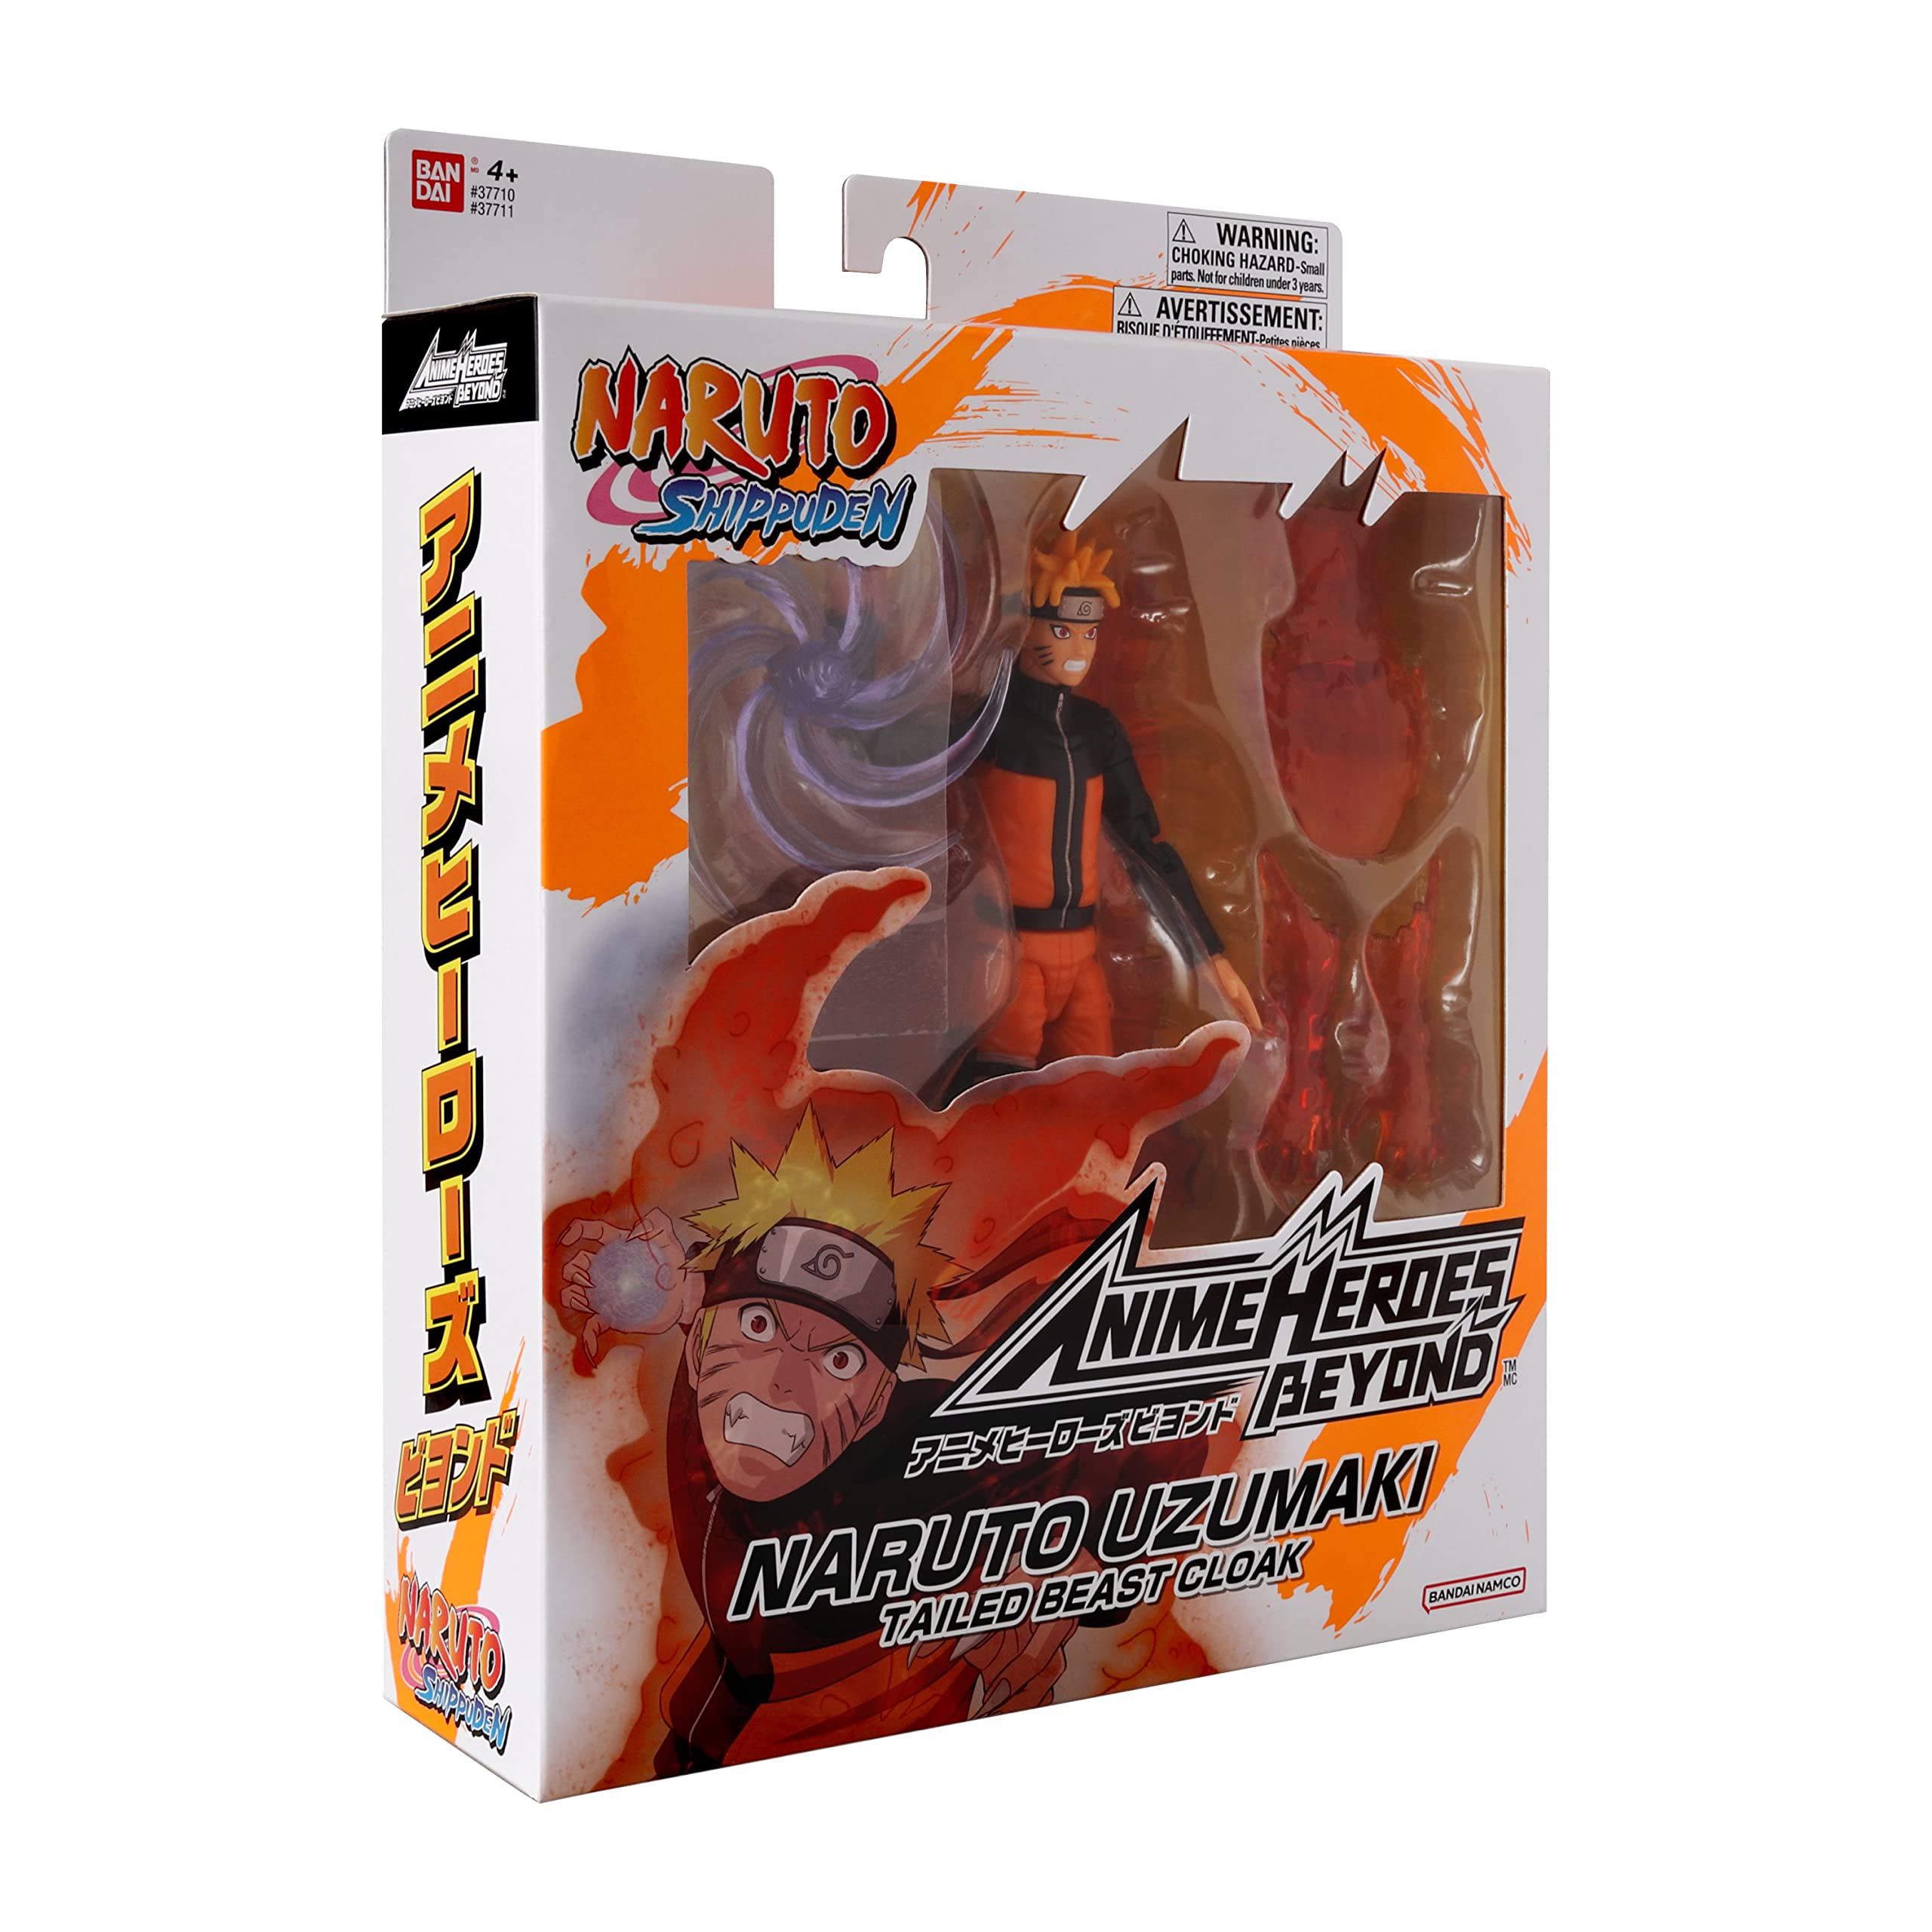 Anime Heroes Beyond - Naruto - Naruto Action Figure 6.5 Inch